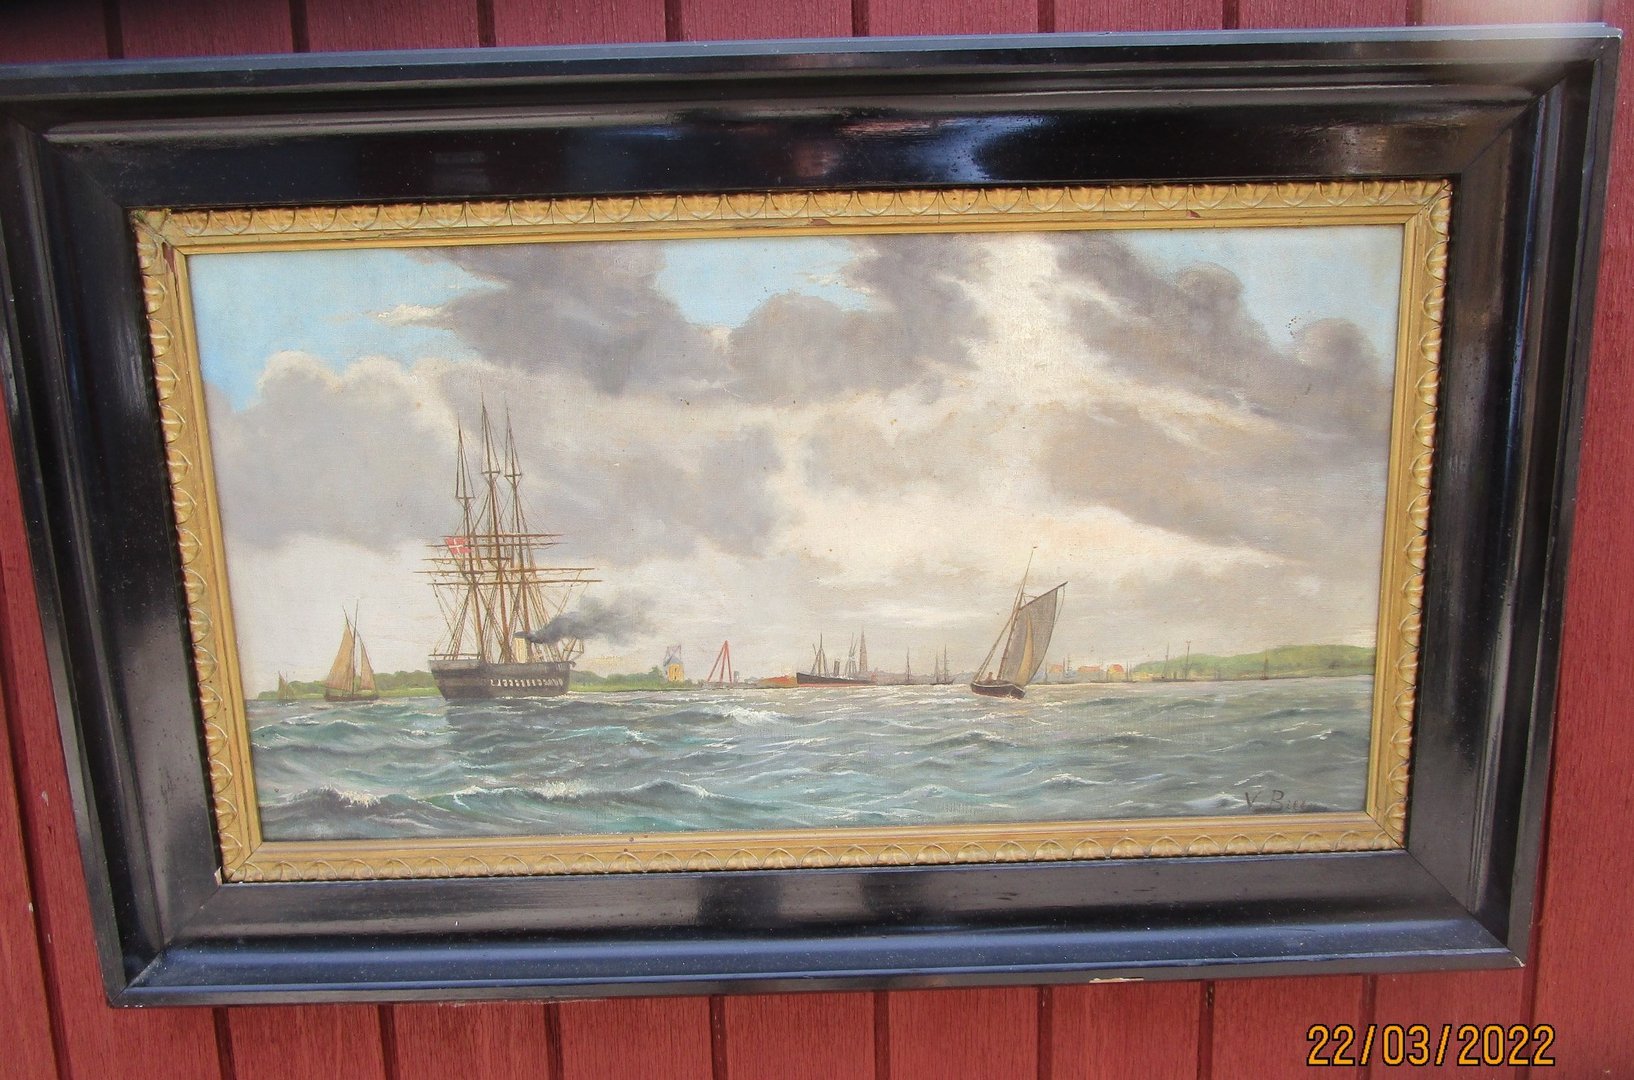 Maleri af Vilhelm Bille, olie på lærred